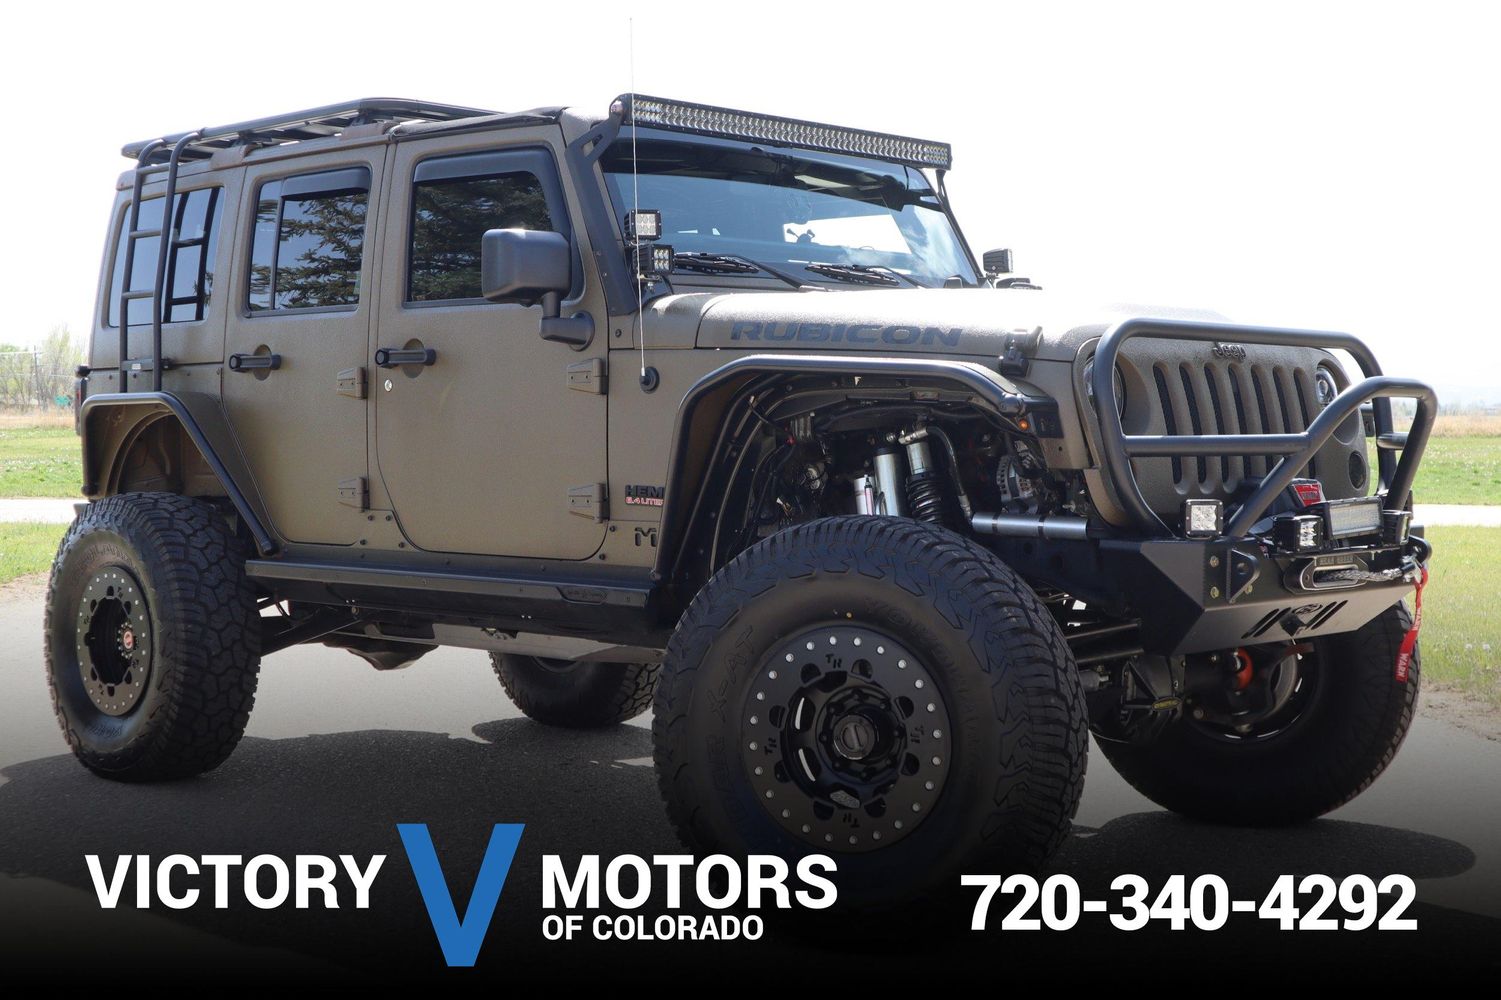 2015 Jeep Wrangler Unlimited Rubicon | Victory Motors of Colorado